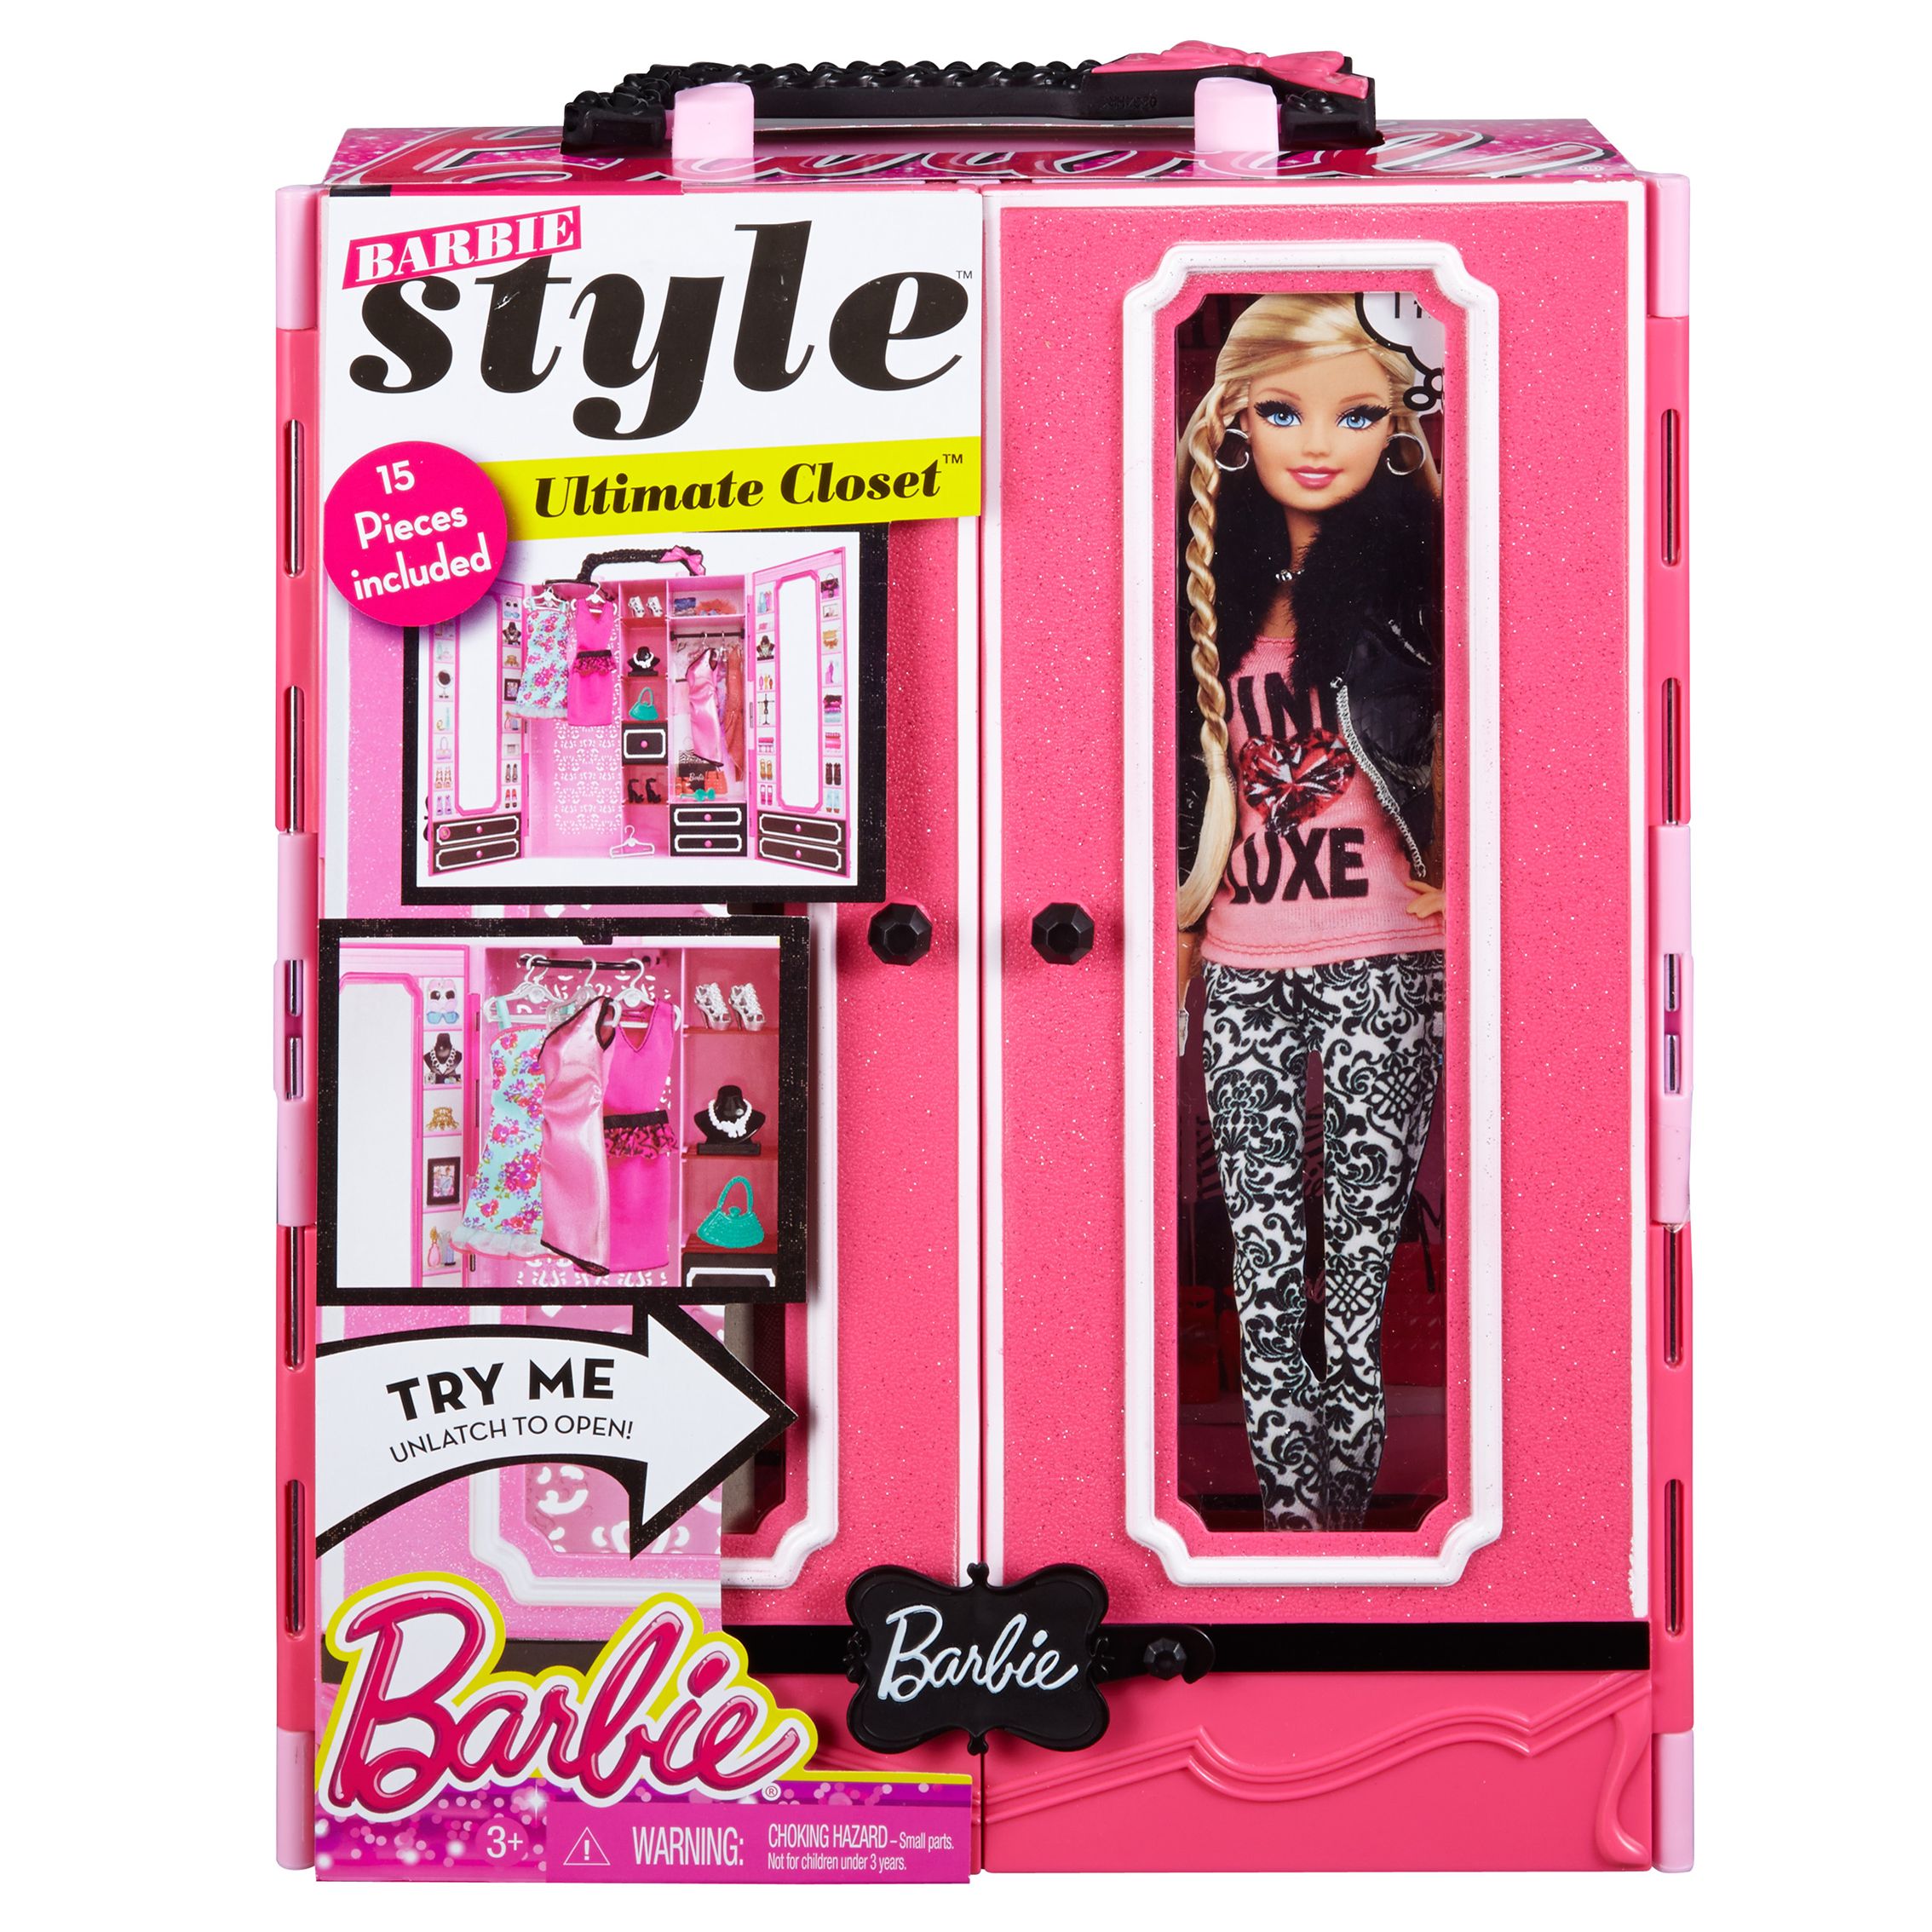 Barbie Style Ultimate Closet